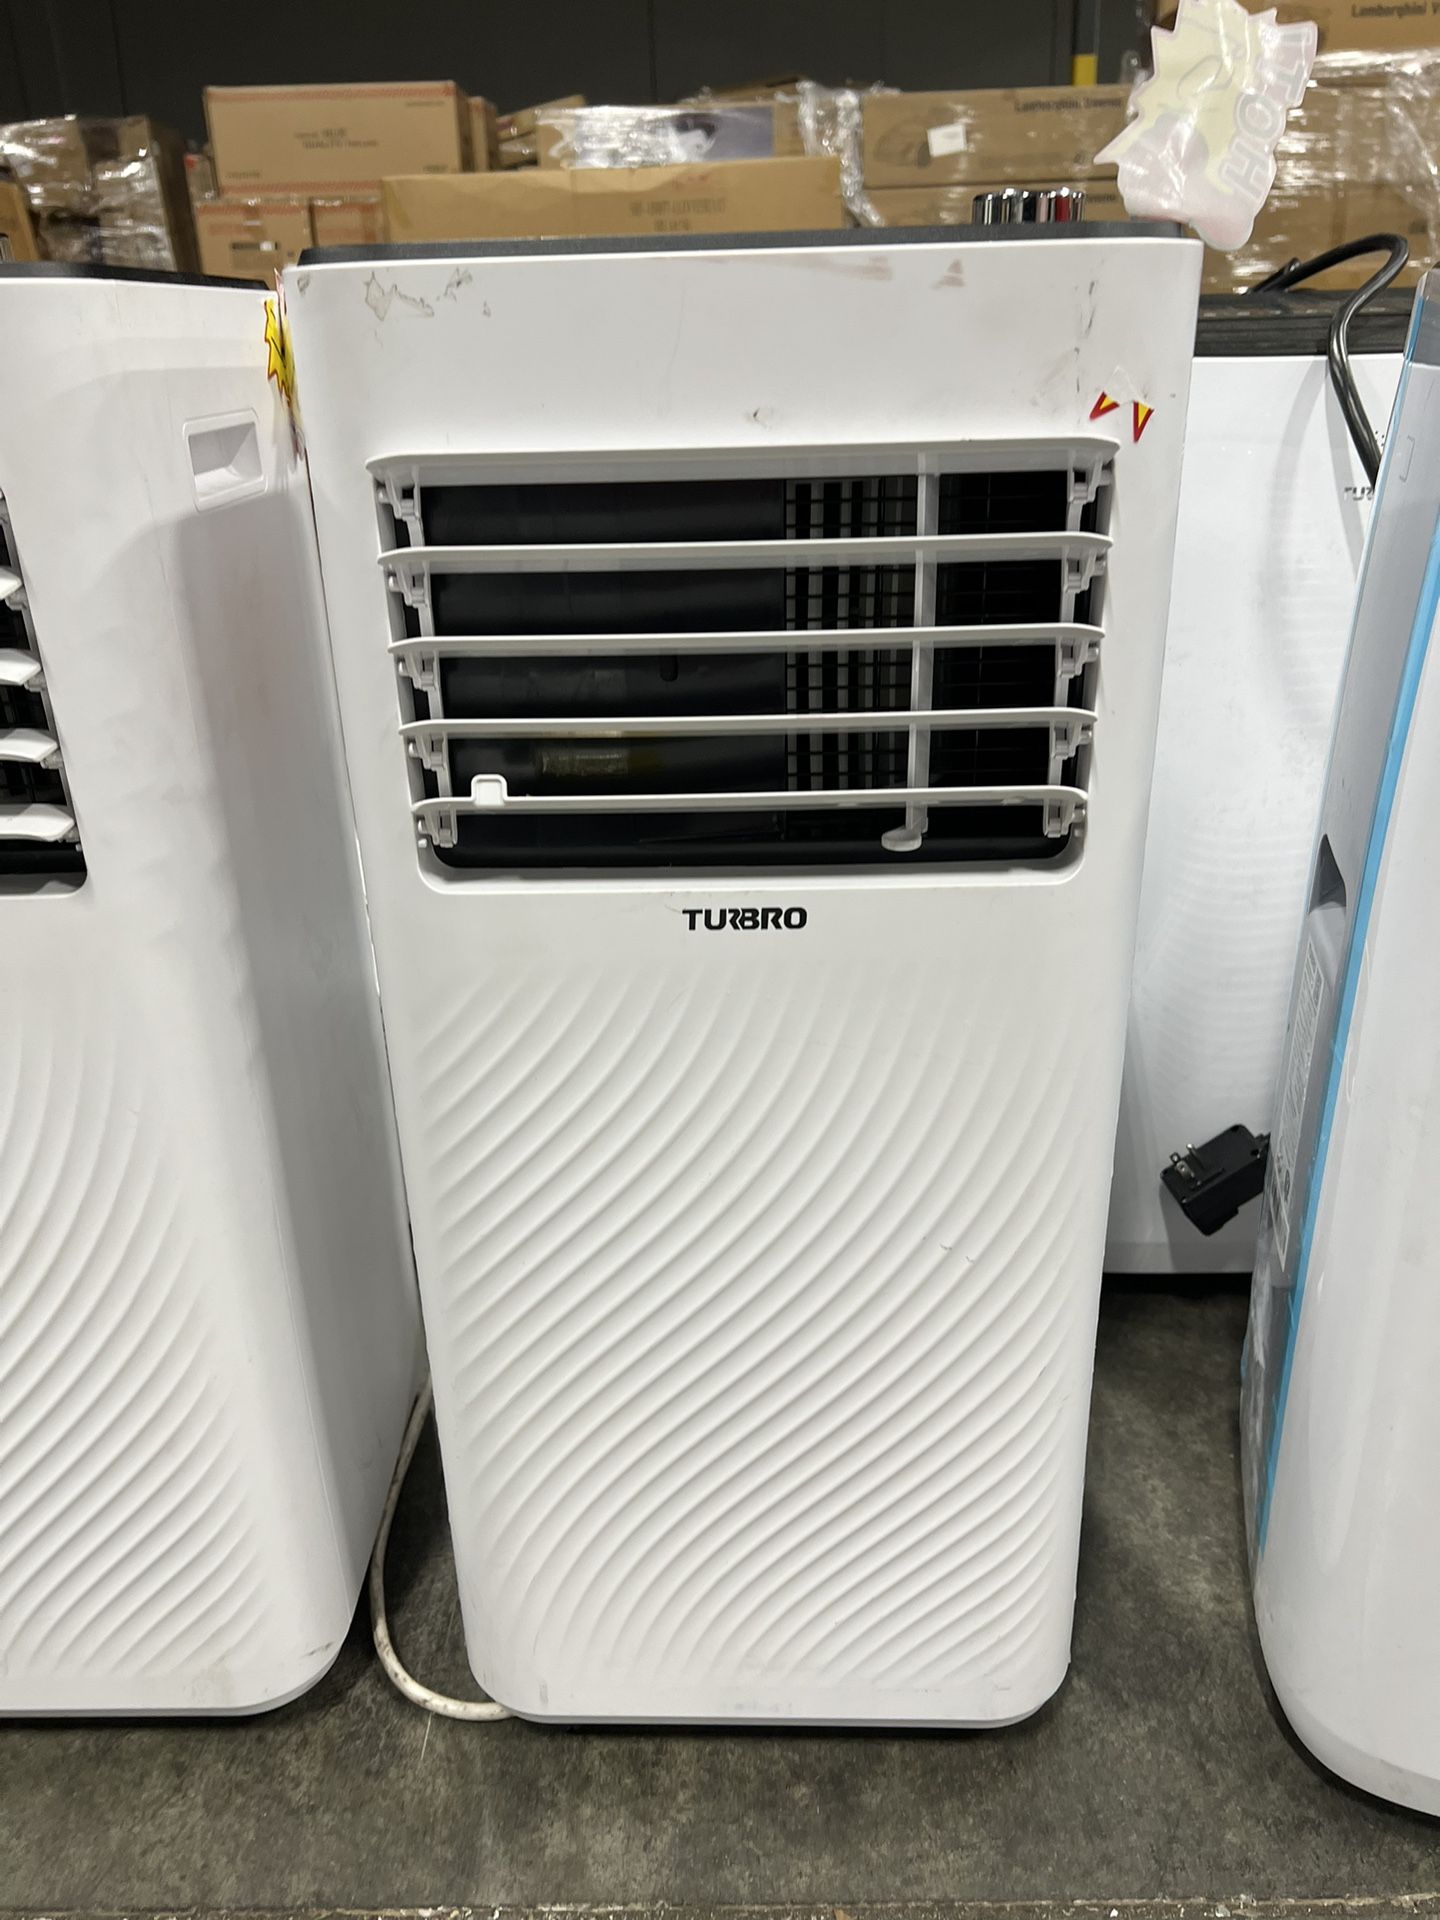 Air Conditioner / Acondicionador de aire